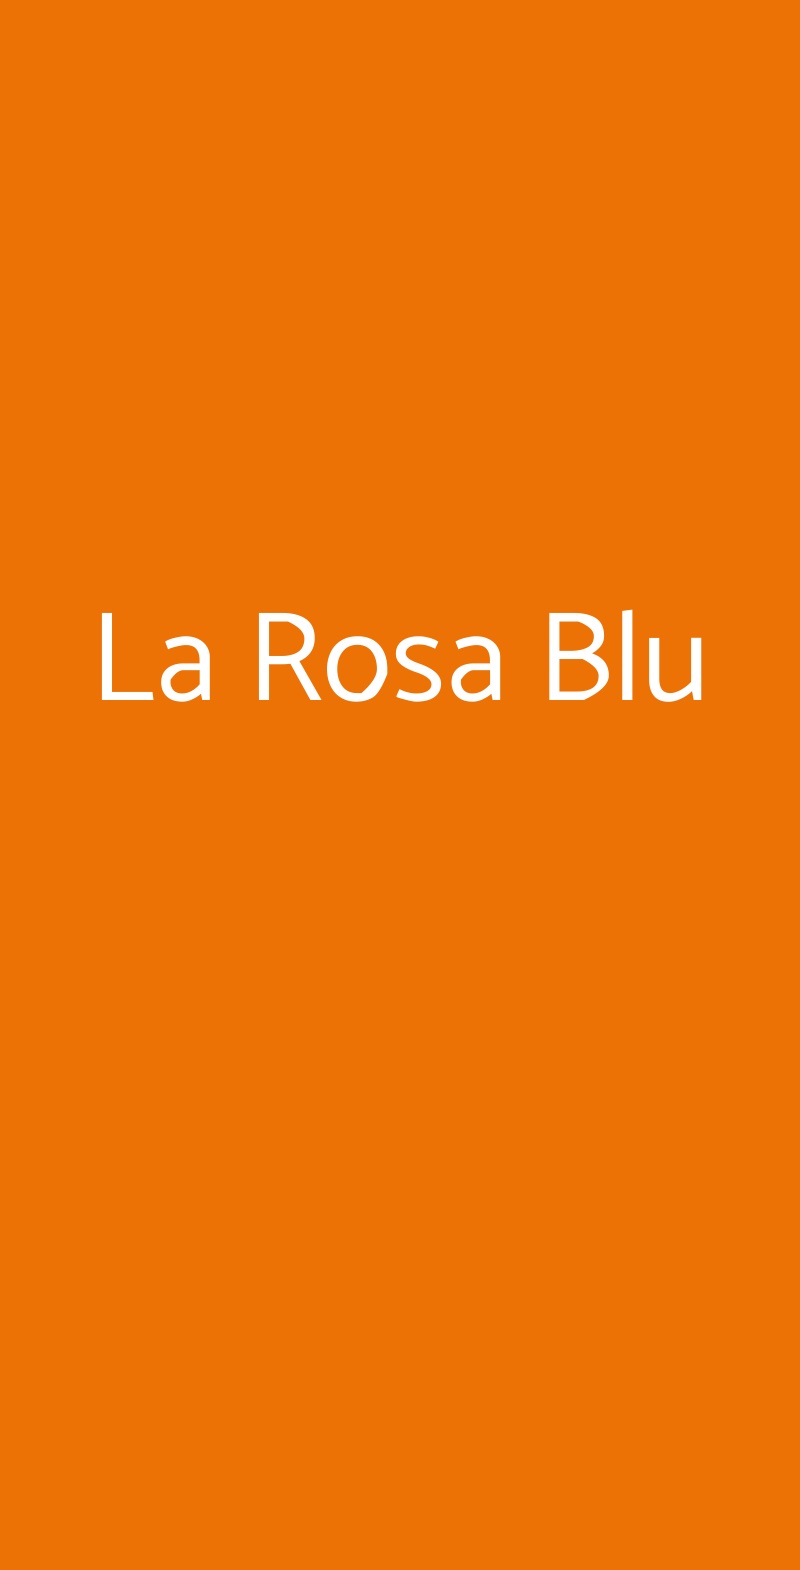 La Rosa Blu Bologna menù 1 pagina